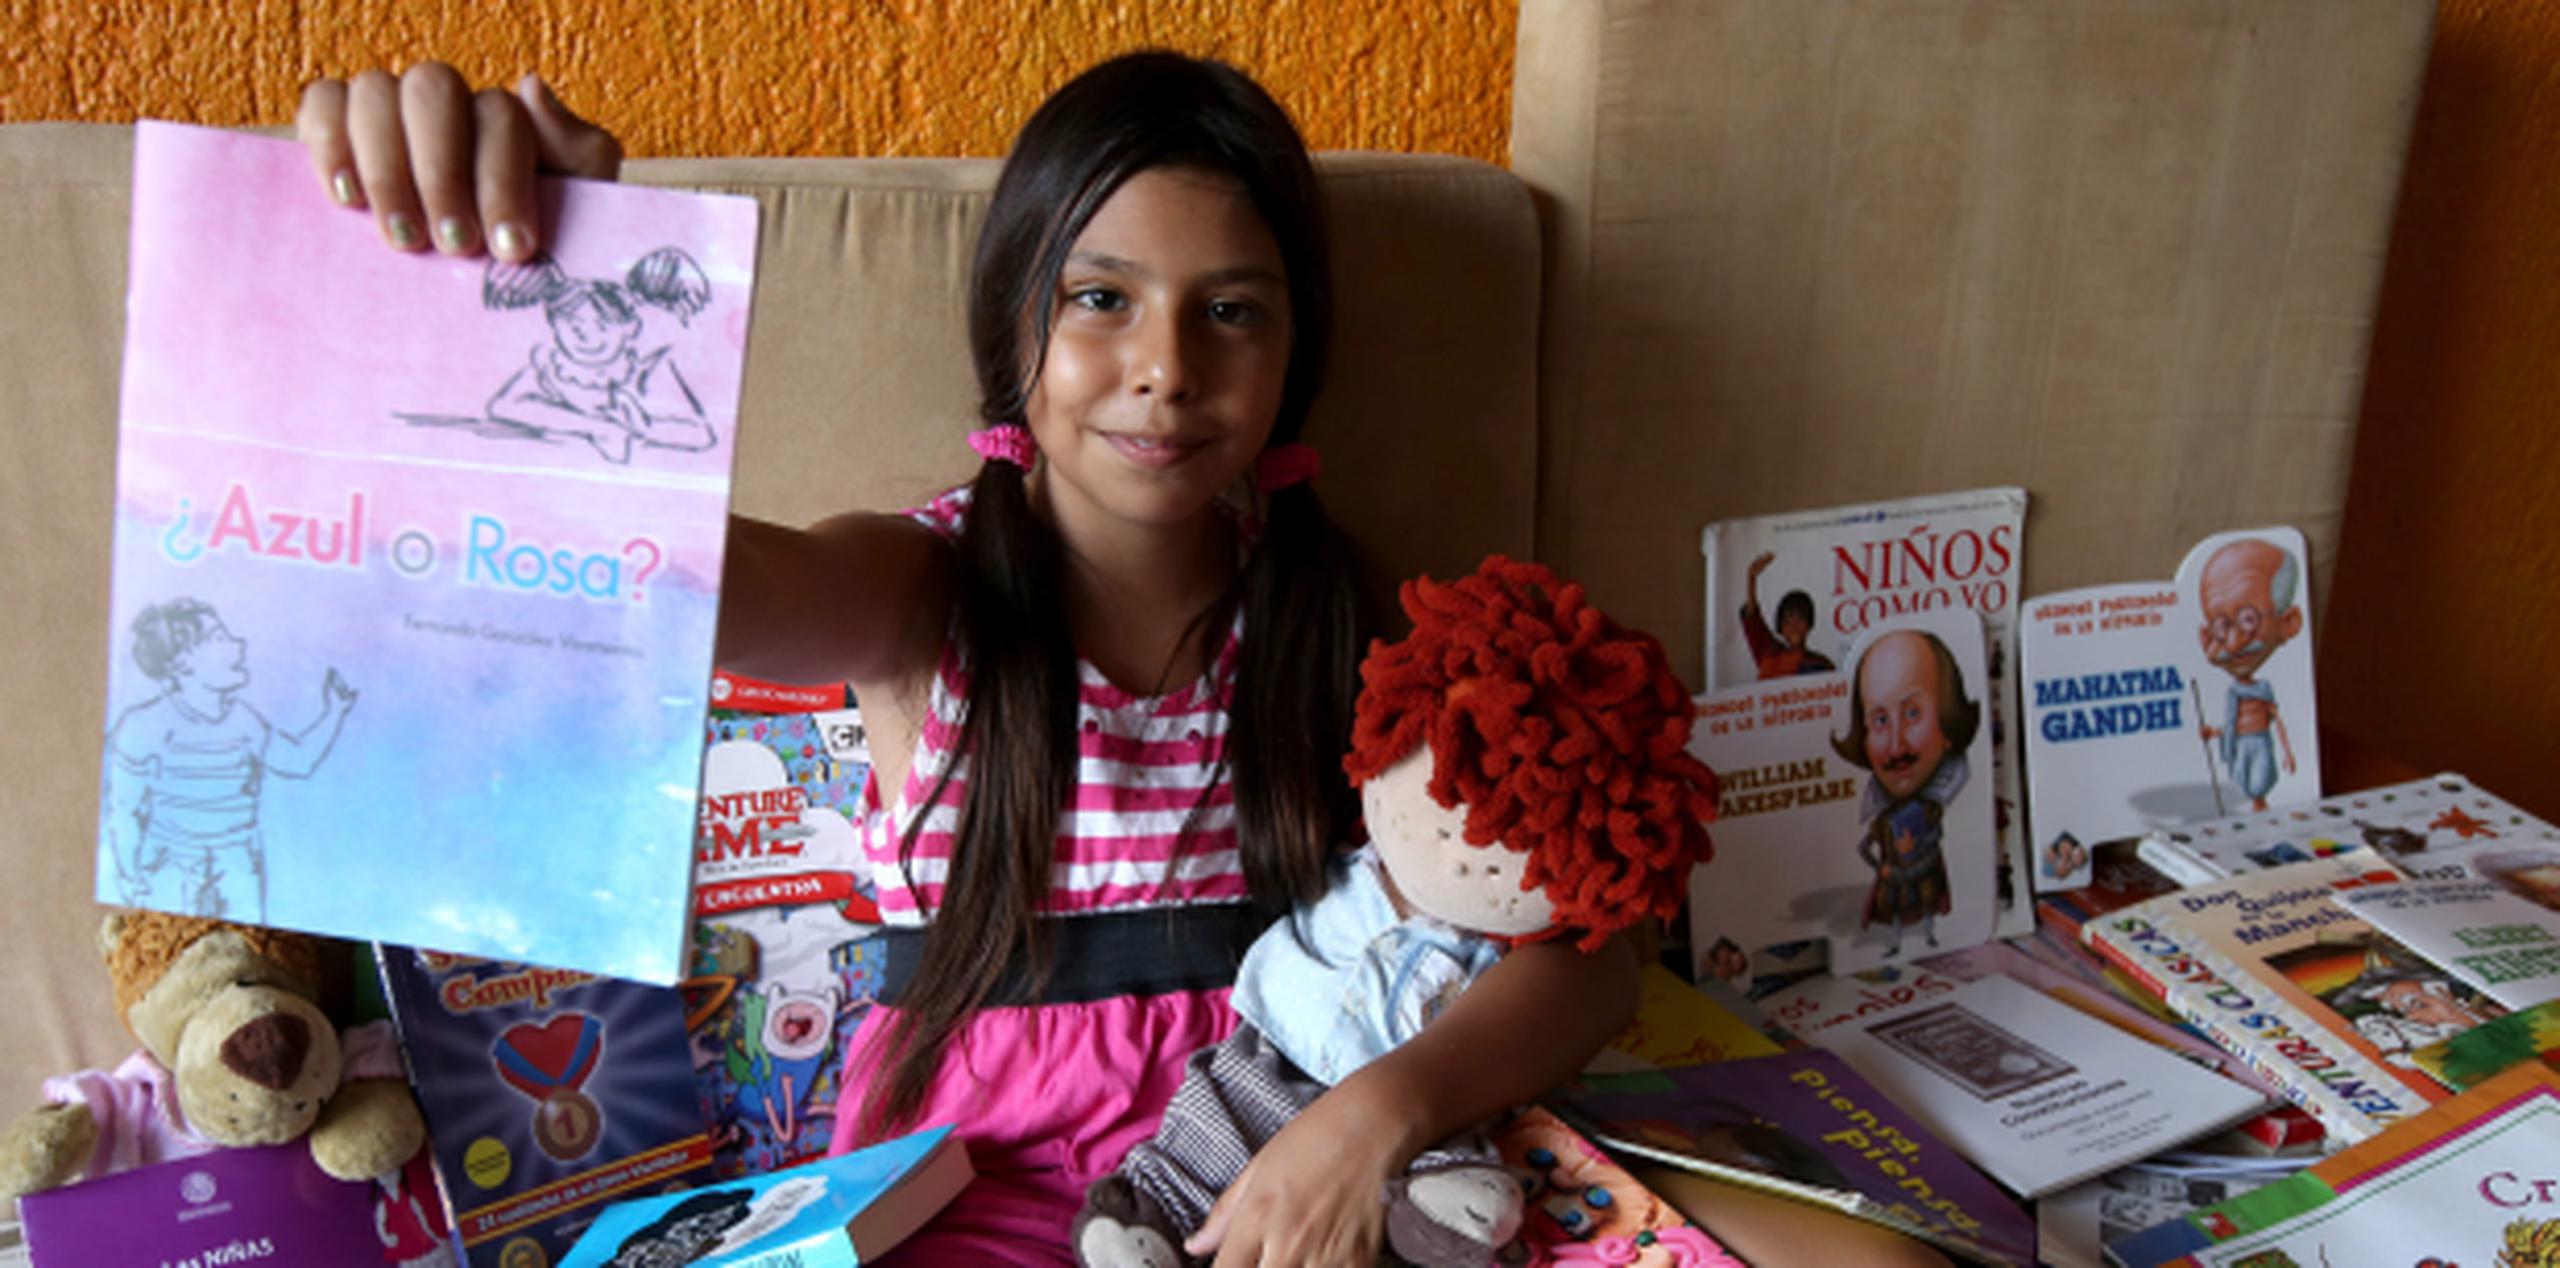 A los ocho años, Fernanda González escribió "¿Azul o rosa?", un libro por el que está nominada a un premio internacional y que la ha llevado a dar charlas a escuelas y universidades, incluso ante diputados. (EFE)